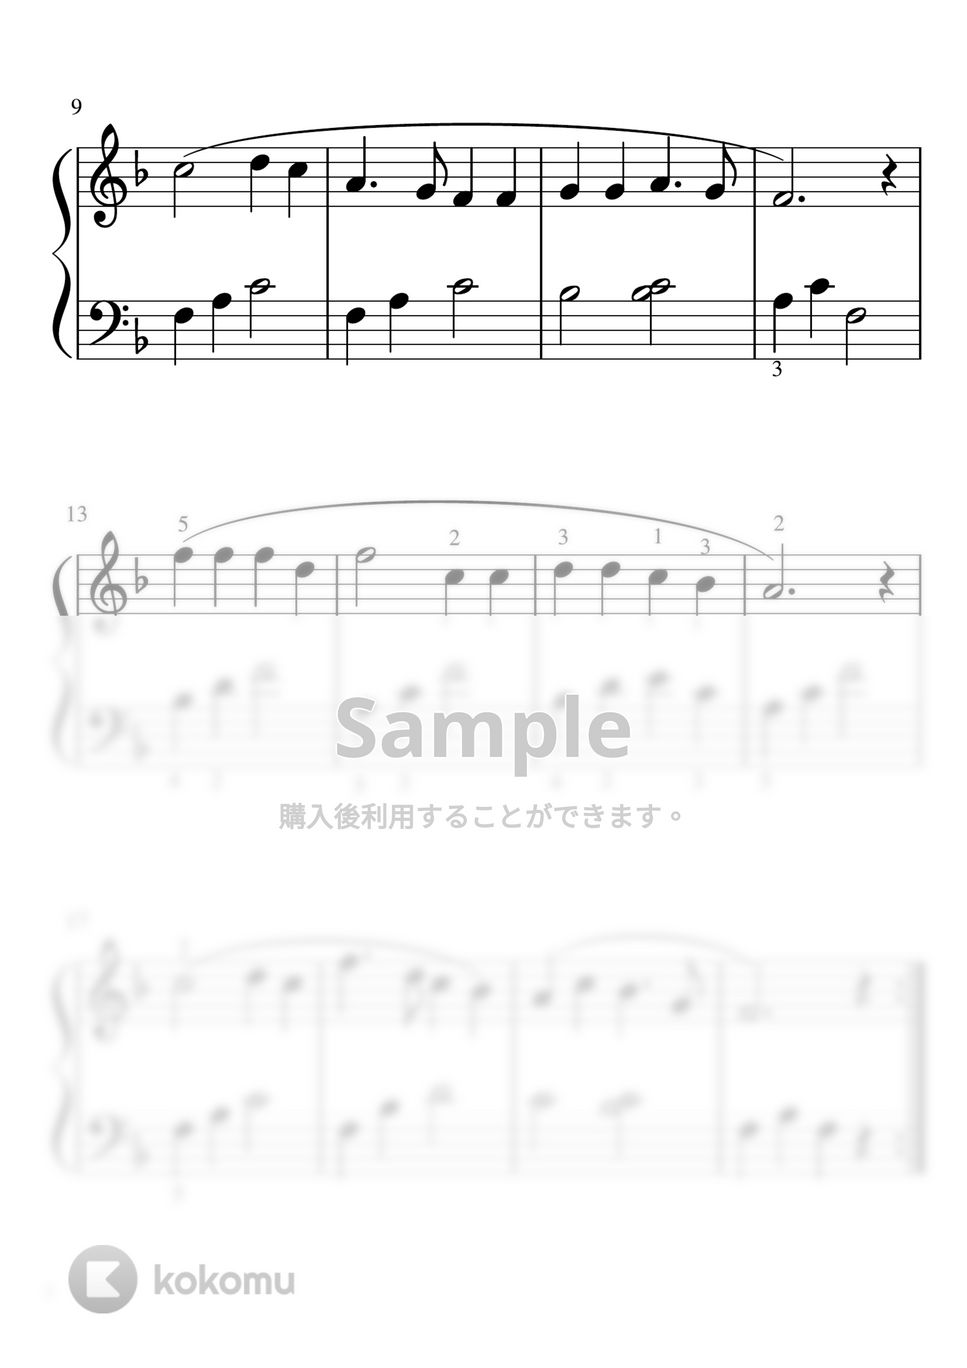 一月一日 (Fdur・ピアノソロ初級) by pfkaori